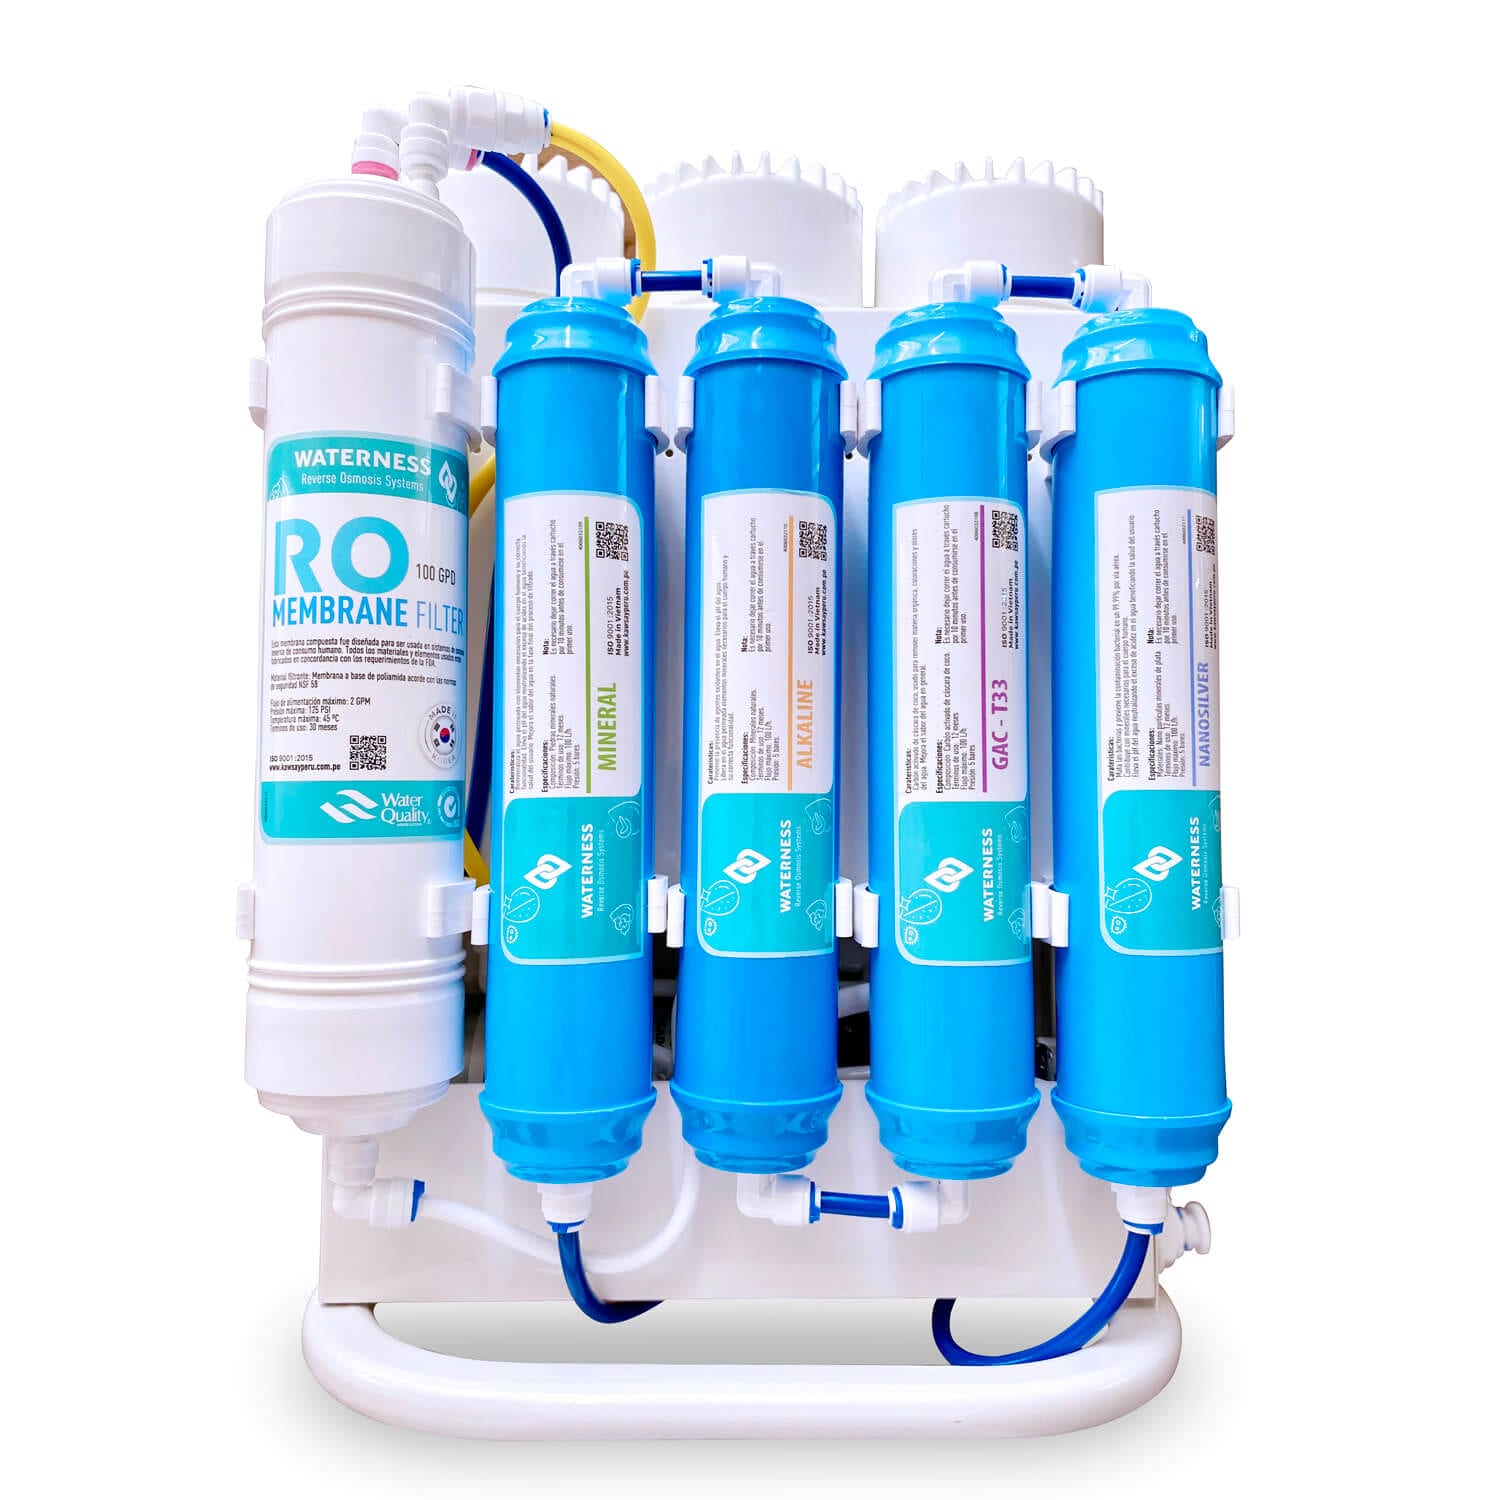 Filtros estándar para equipos compactos de osmosis inversa. PACK RO 21/2x12